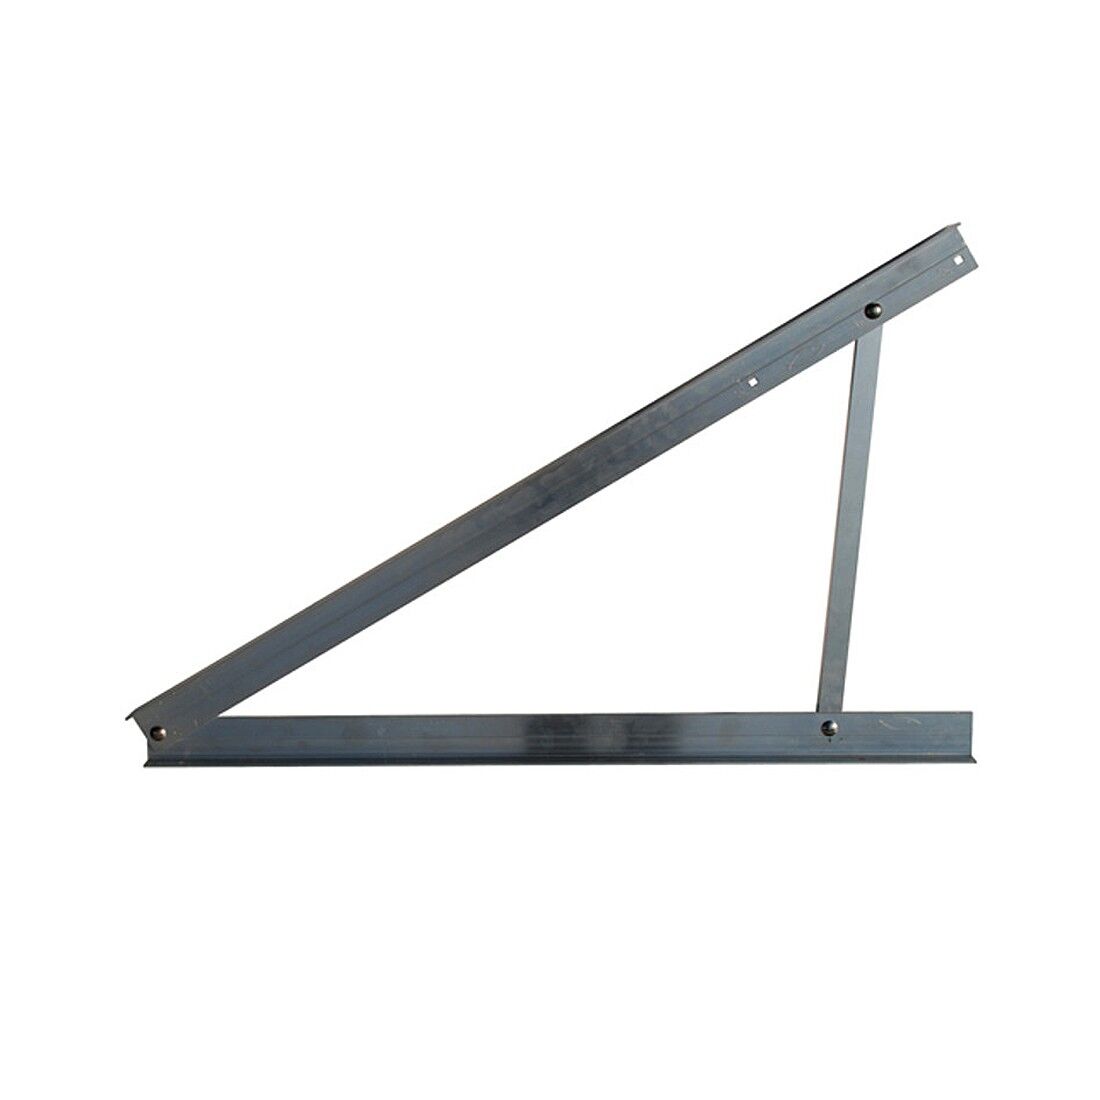 Triangolo STFN per fissaggio pannelli su tetto piano   Inclinazione 25°-30°-35°   Fischer